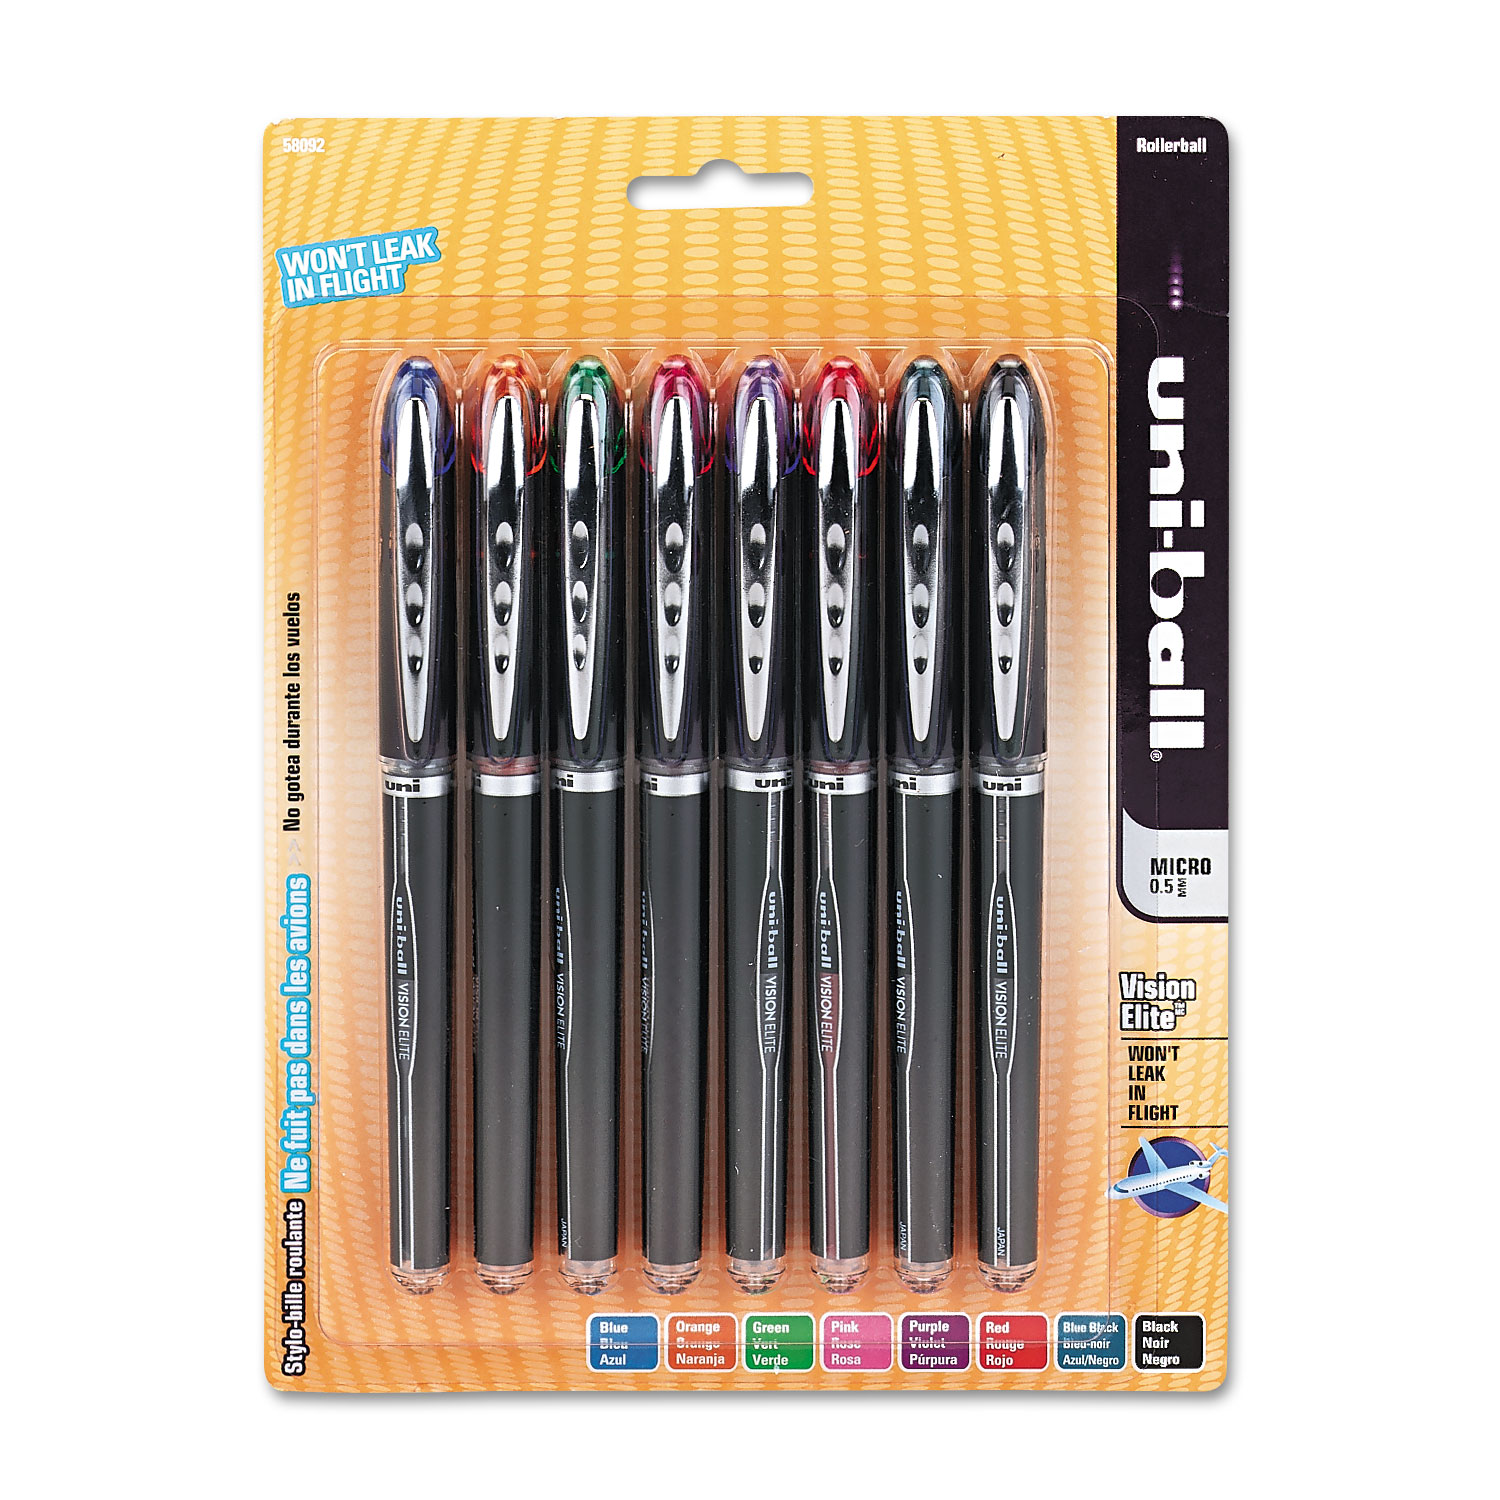 VISION ELITE Stick Roller Ball Pen, Micro 0.5mm, Assorted Ink, Black Barrel